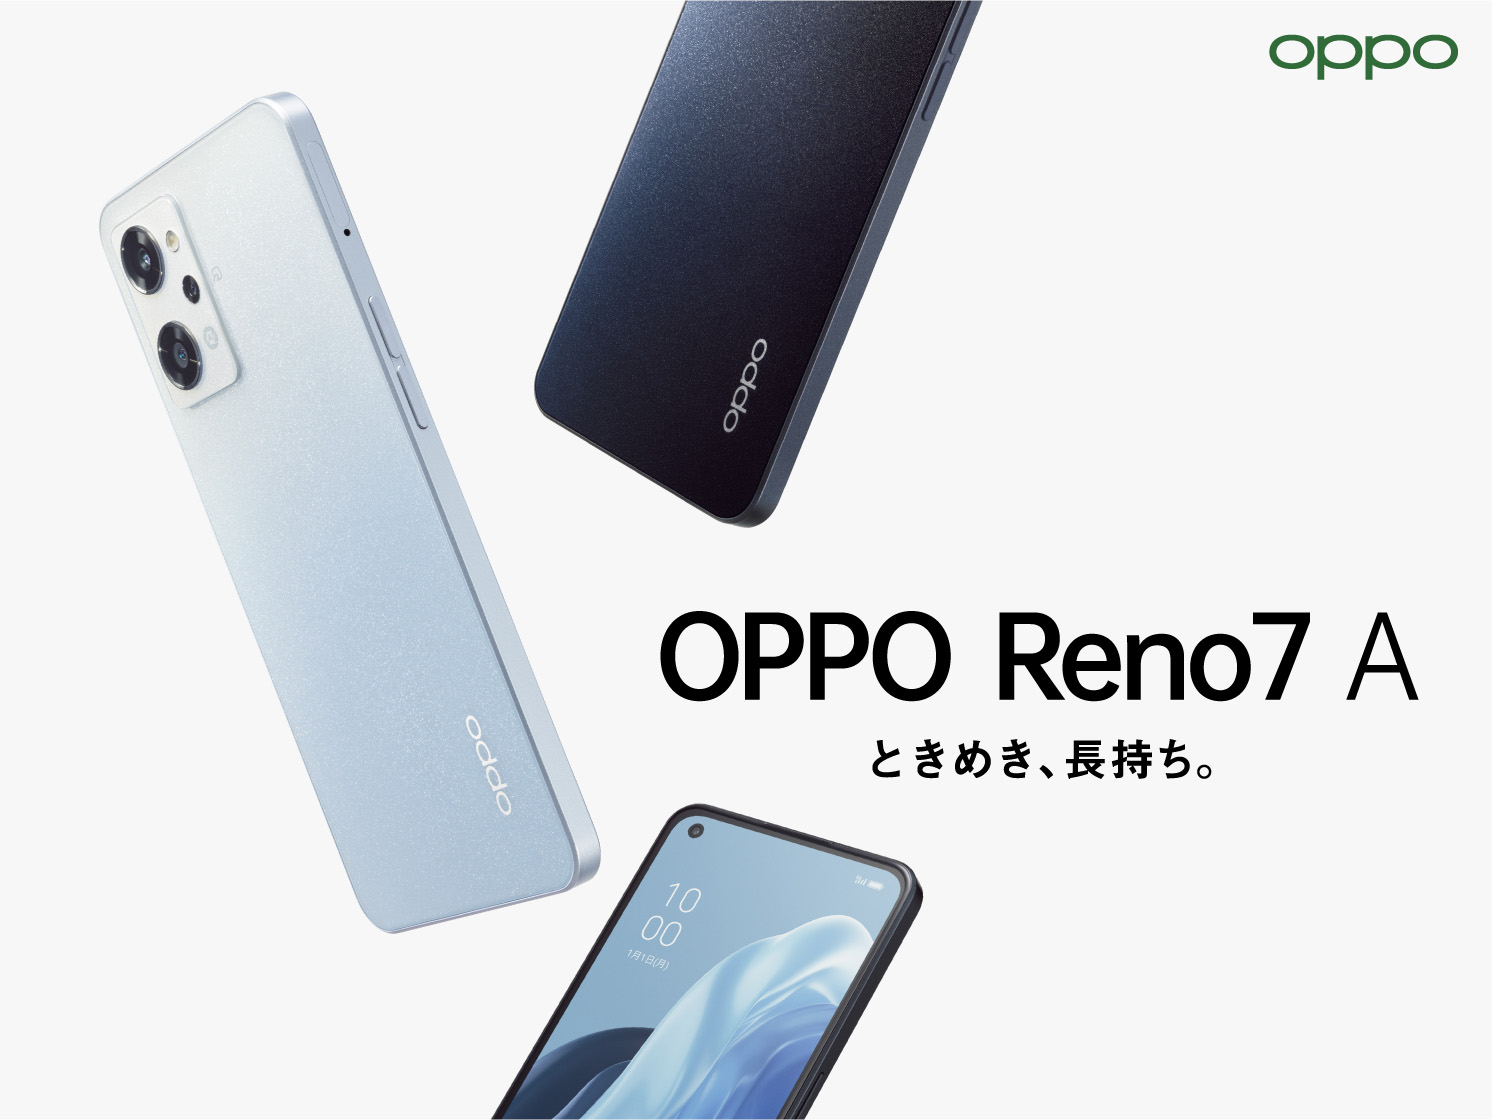 OPPO Reno7 A」が6月23日(木)から販売開始 コンセプトは「ときめき